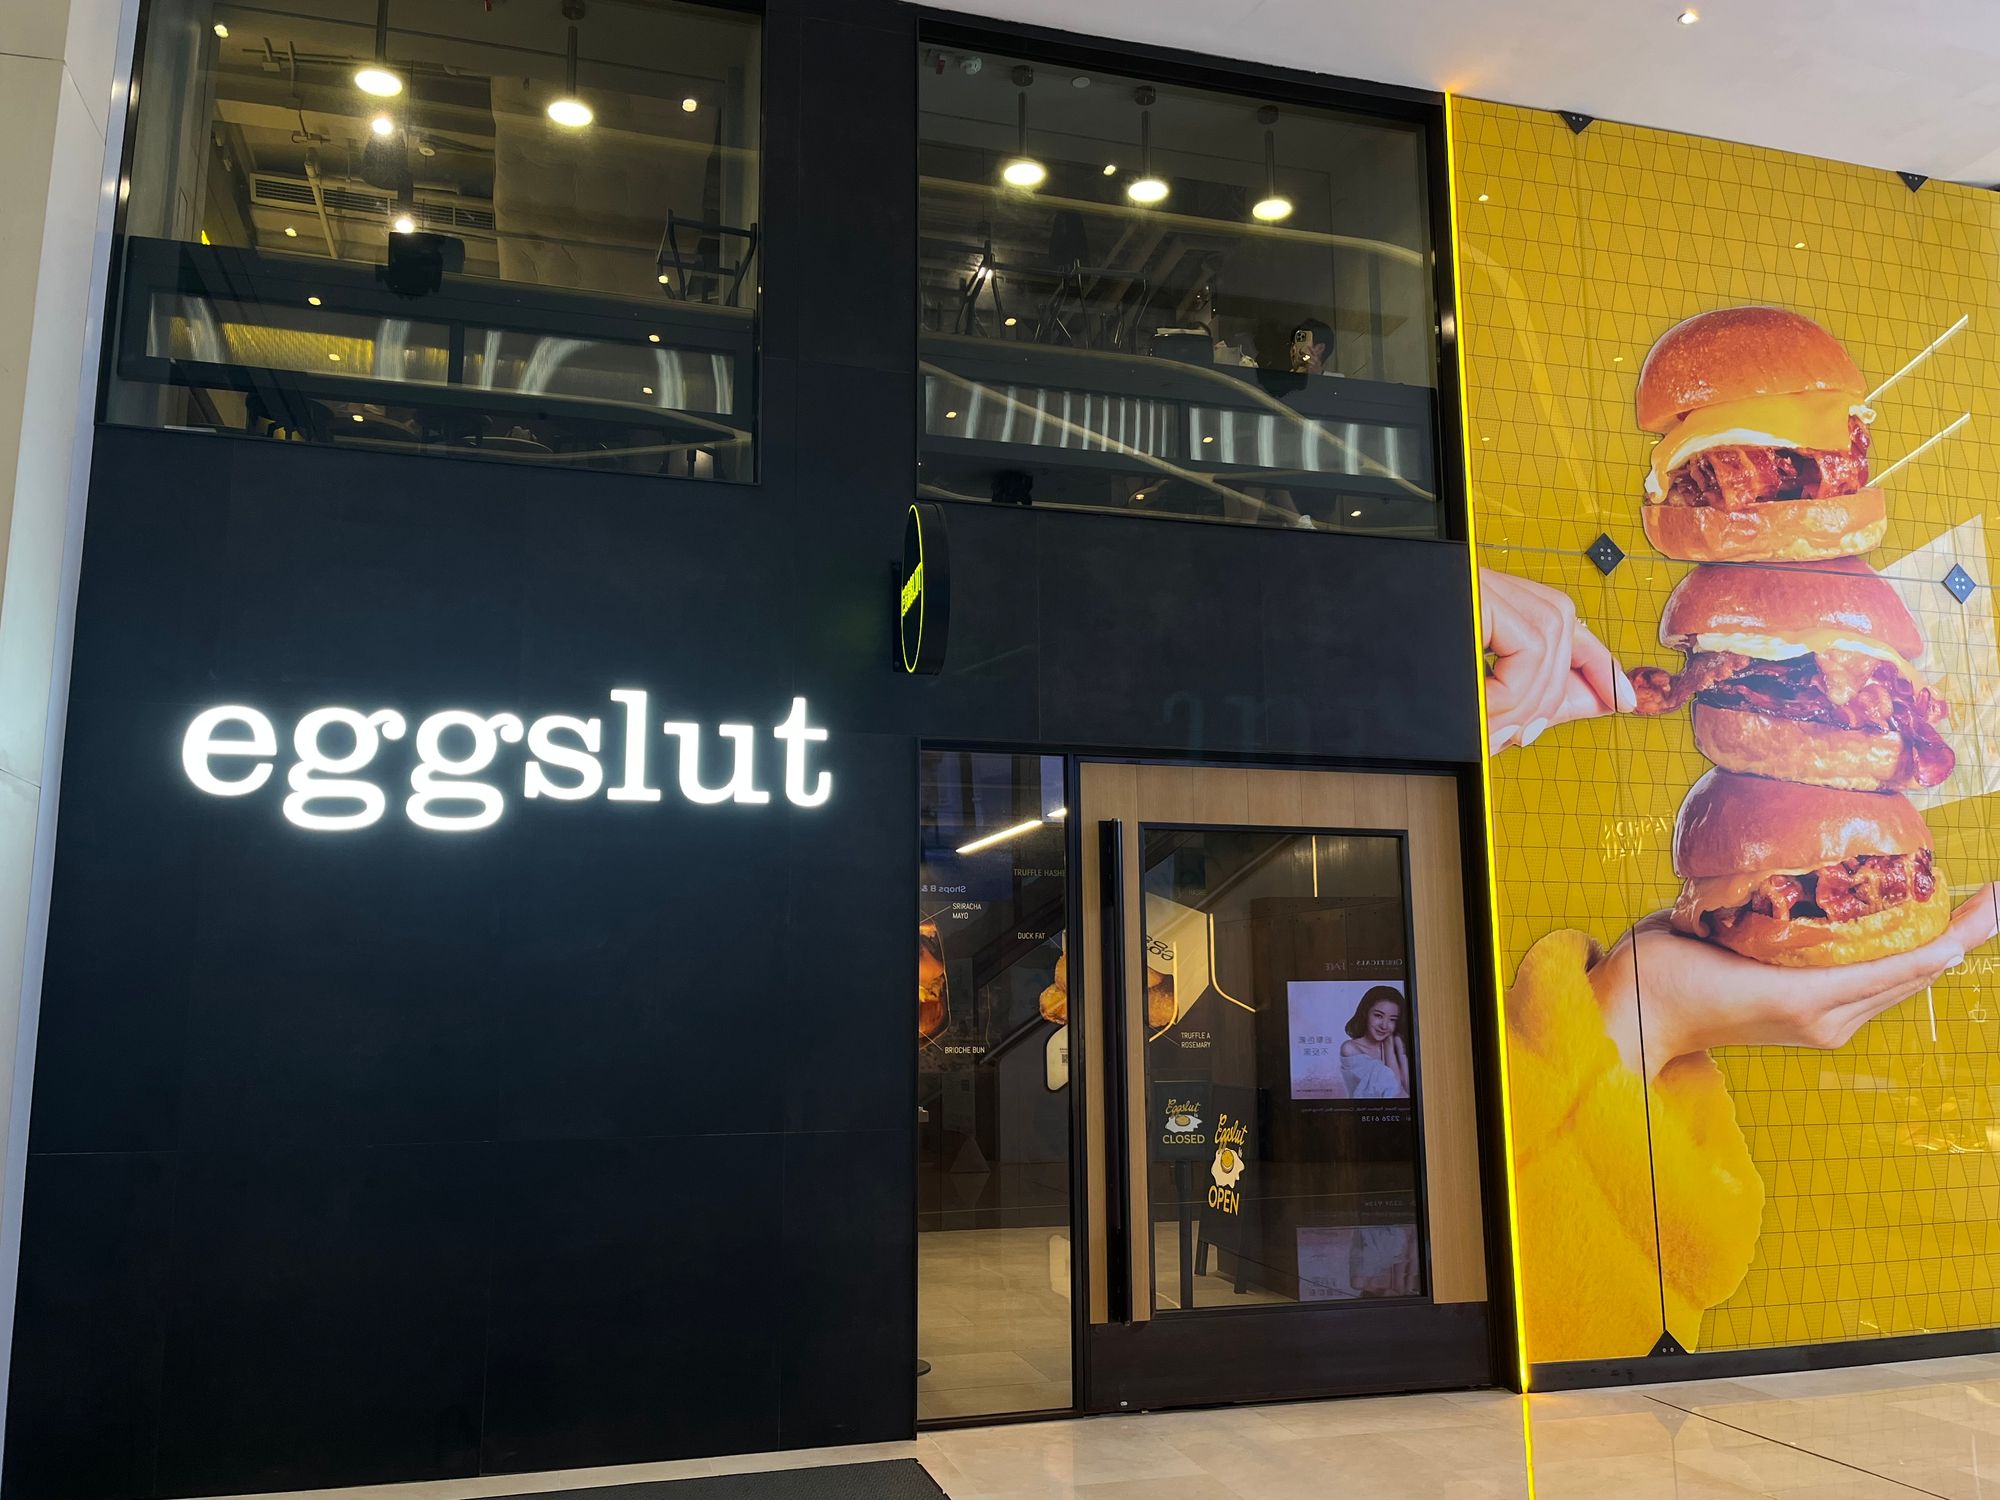 Eggslut restaurant's store front in Hong Kong 